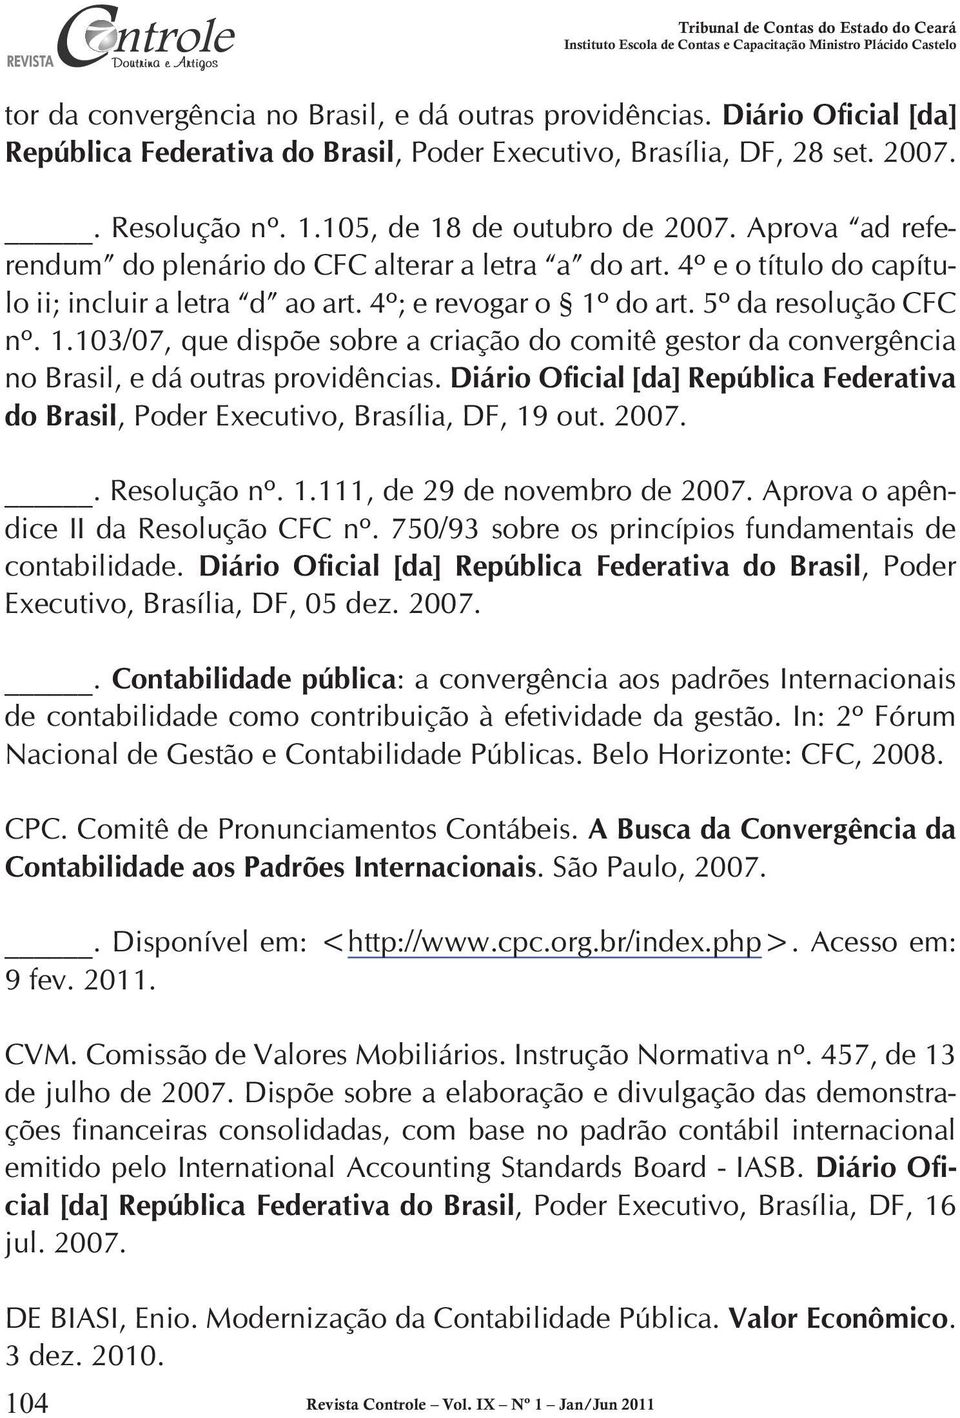 5º da resolução CFC nº. 1.103/07, que dispõe sobre a criação do comitê gestor da convergência no Brasil, e dá outras providências.